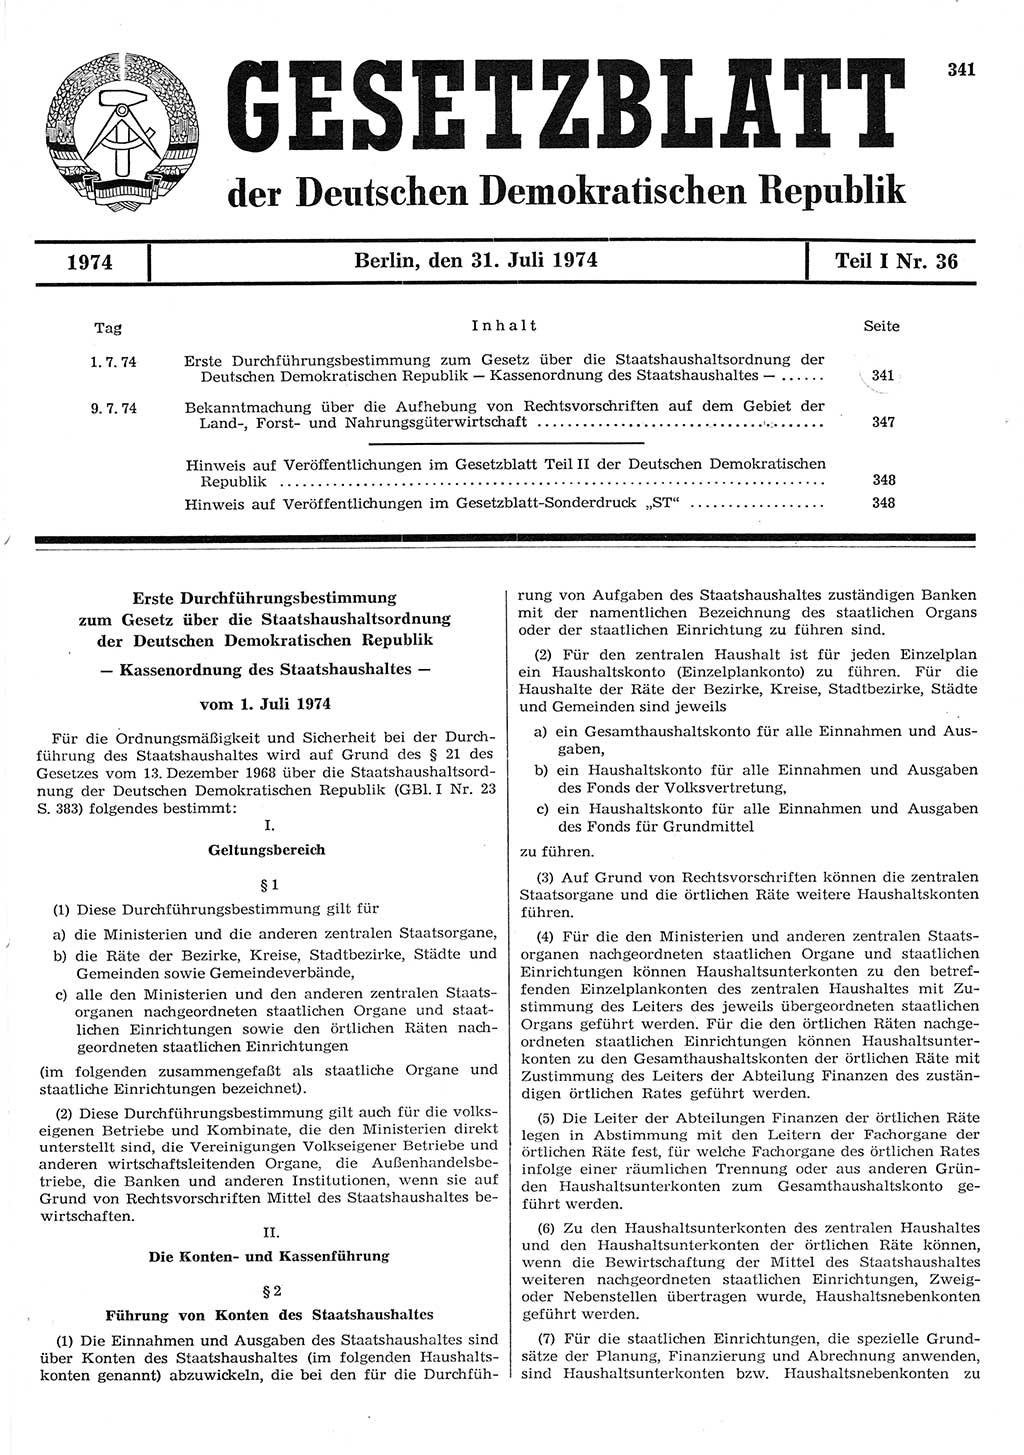 Gesetzblatt (GBl.) der Deutschen Demokratischen Republik (DDR) Teil Ⅰ 1974, Seite 341 (GBl. DDR Ⅰ 1974, S. 341)